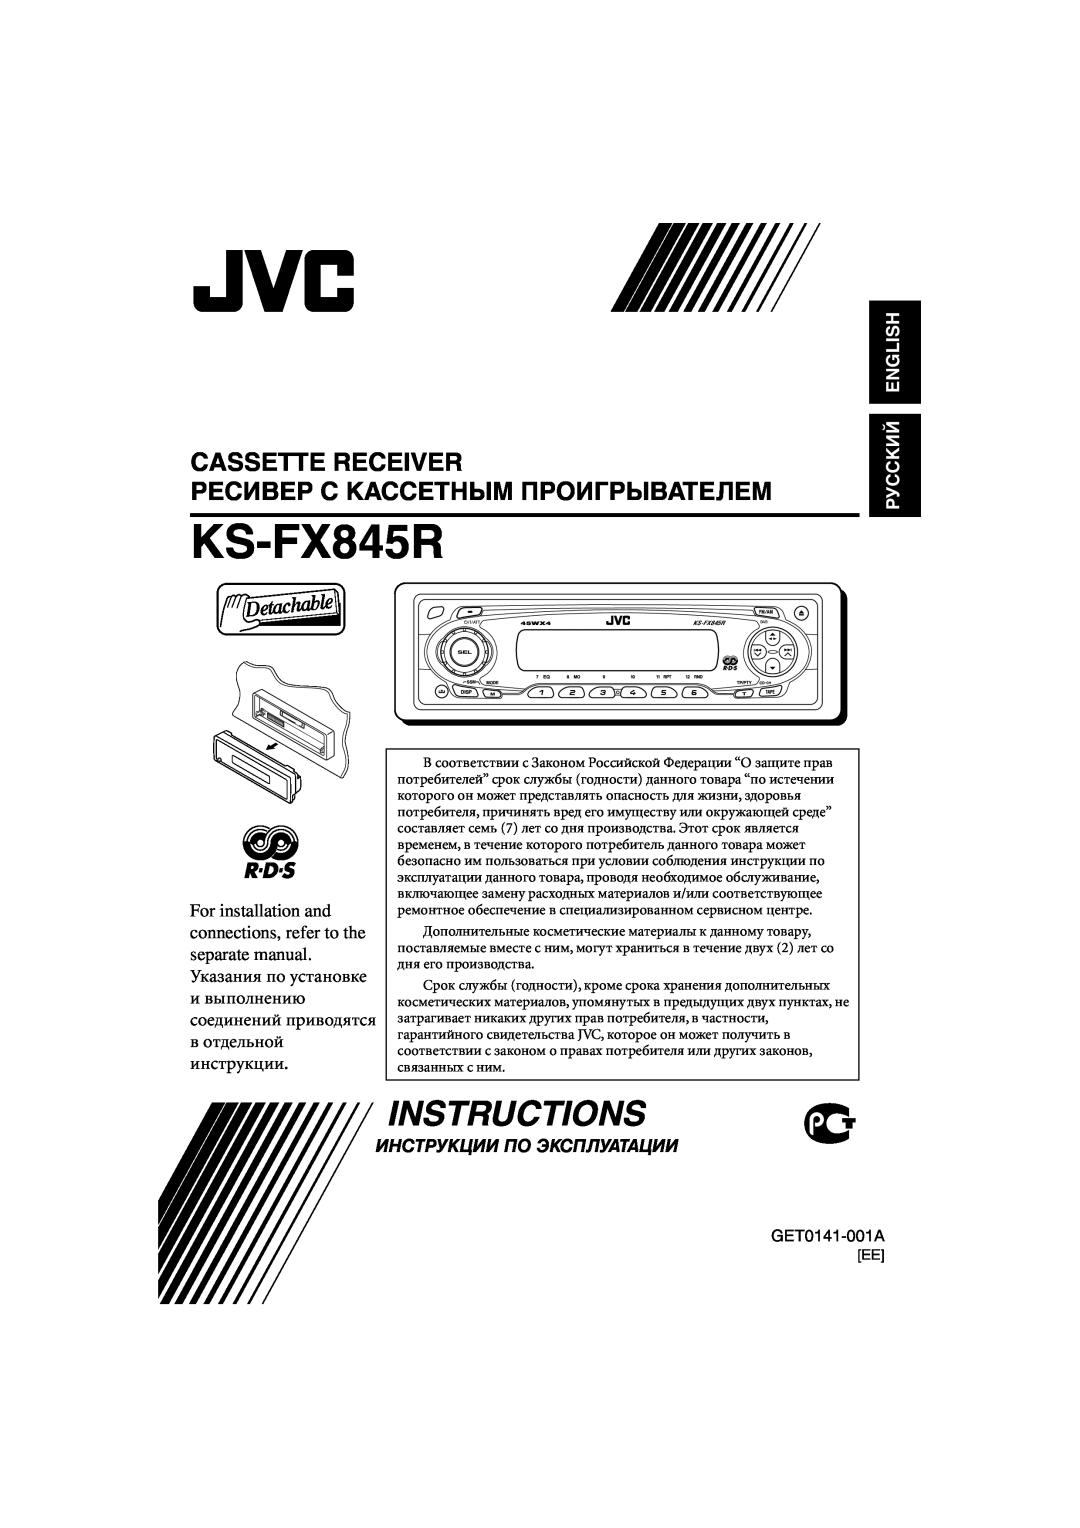 JVC KS-FX845R manual Cassette Receiver, Instructions, Ресивер С Кассетным Проигрывателем, Руcckий English 